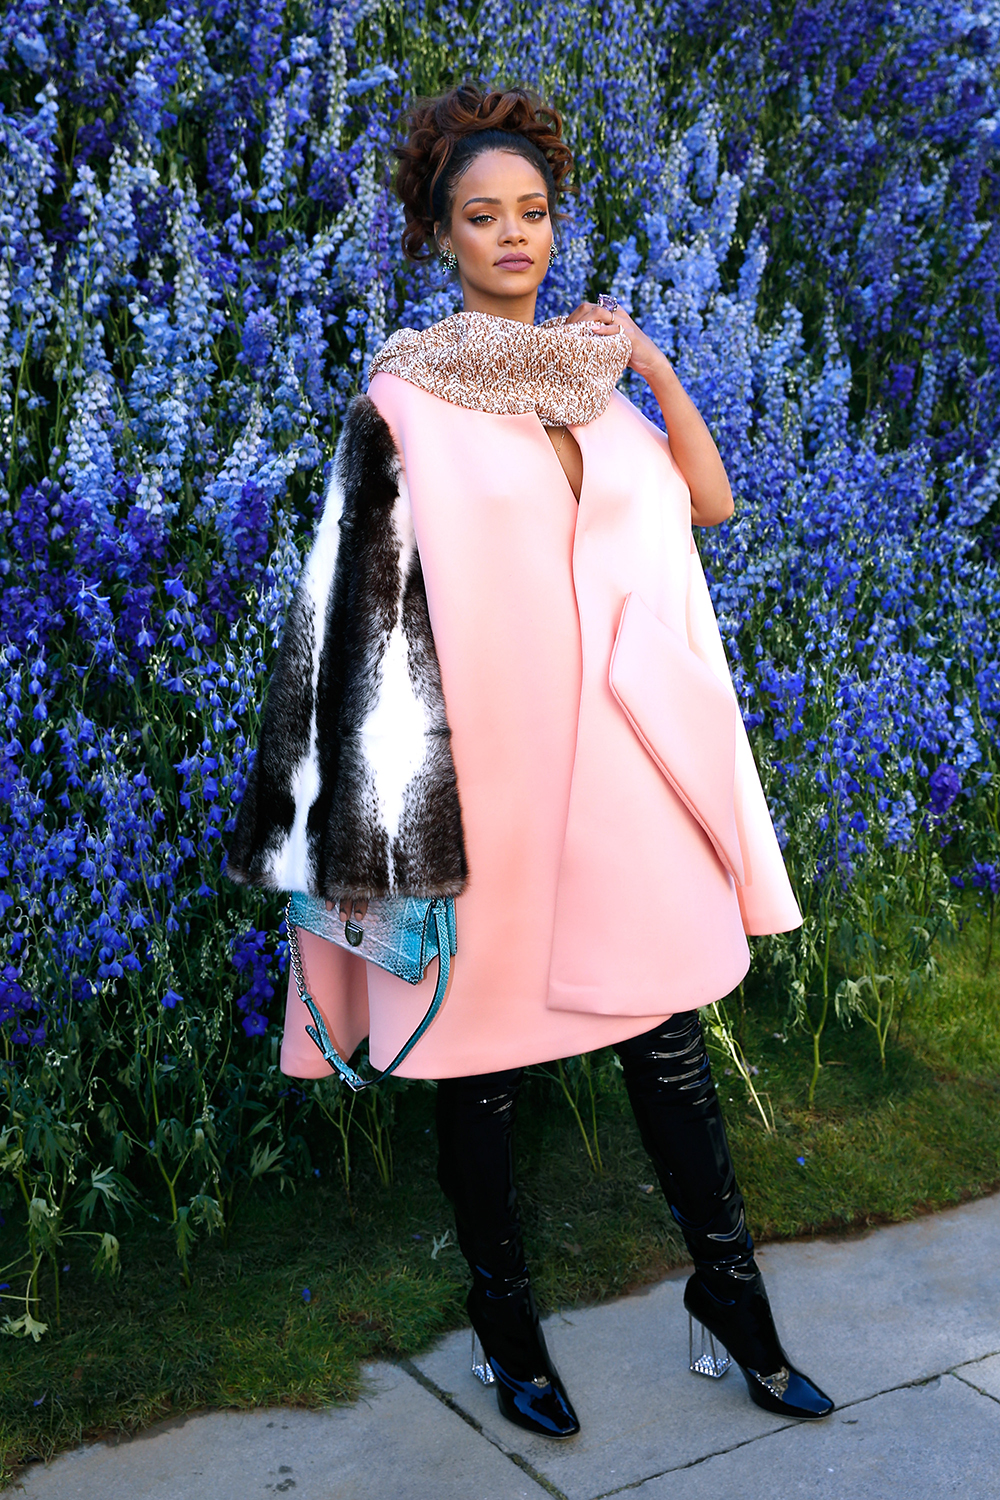 Rihanna at the Dior show at Paris Fashion Week.